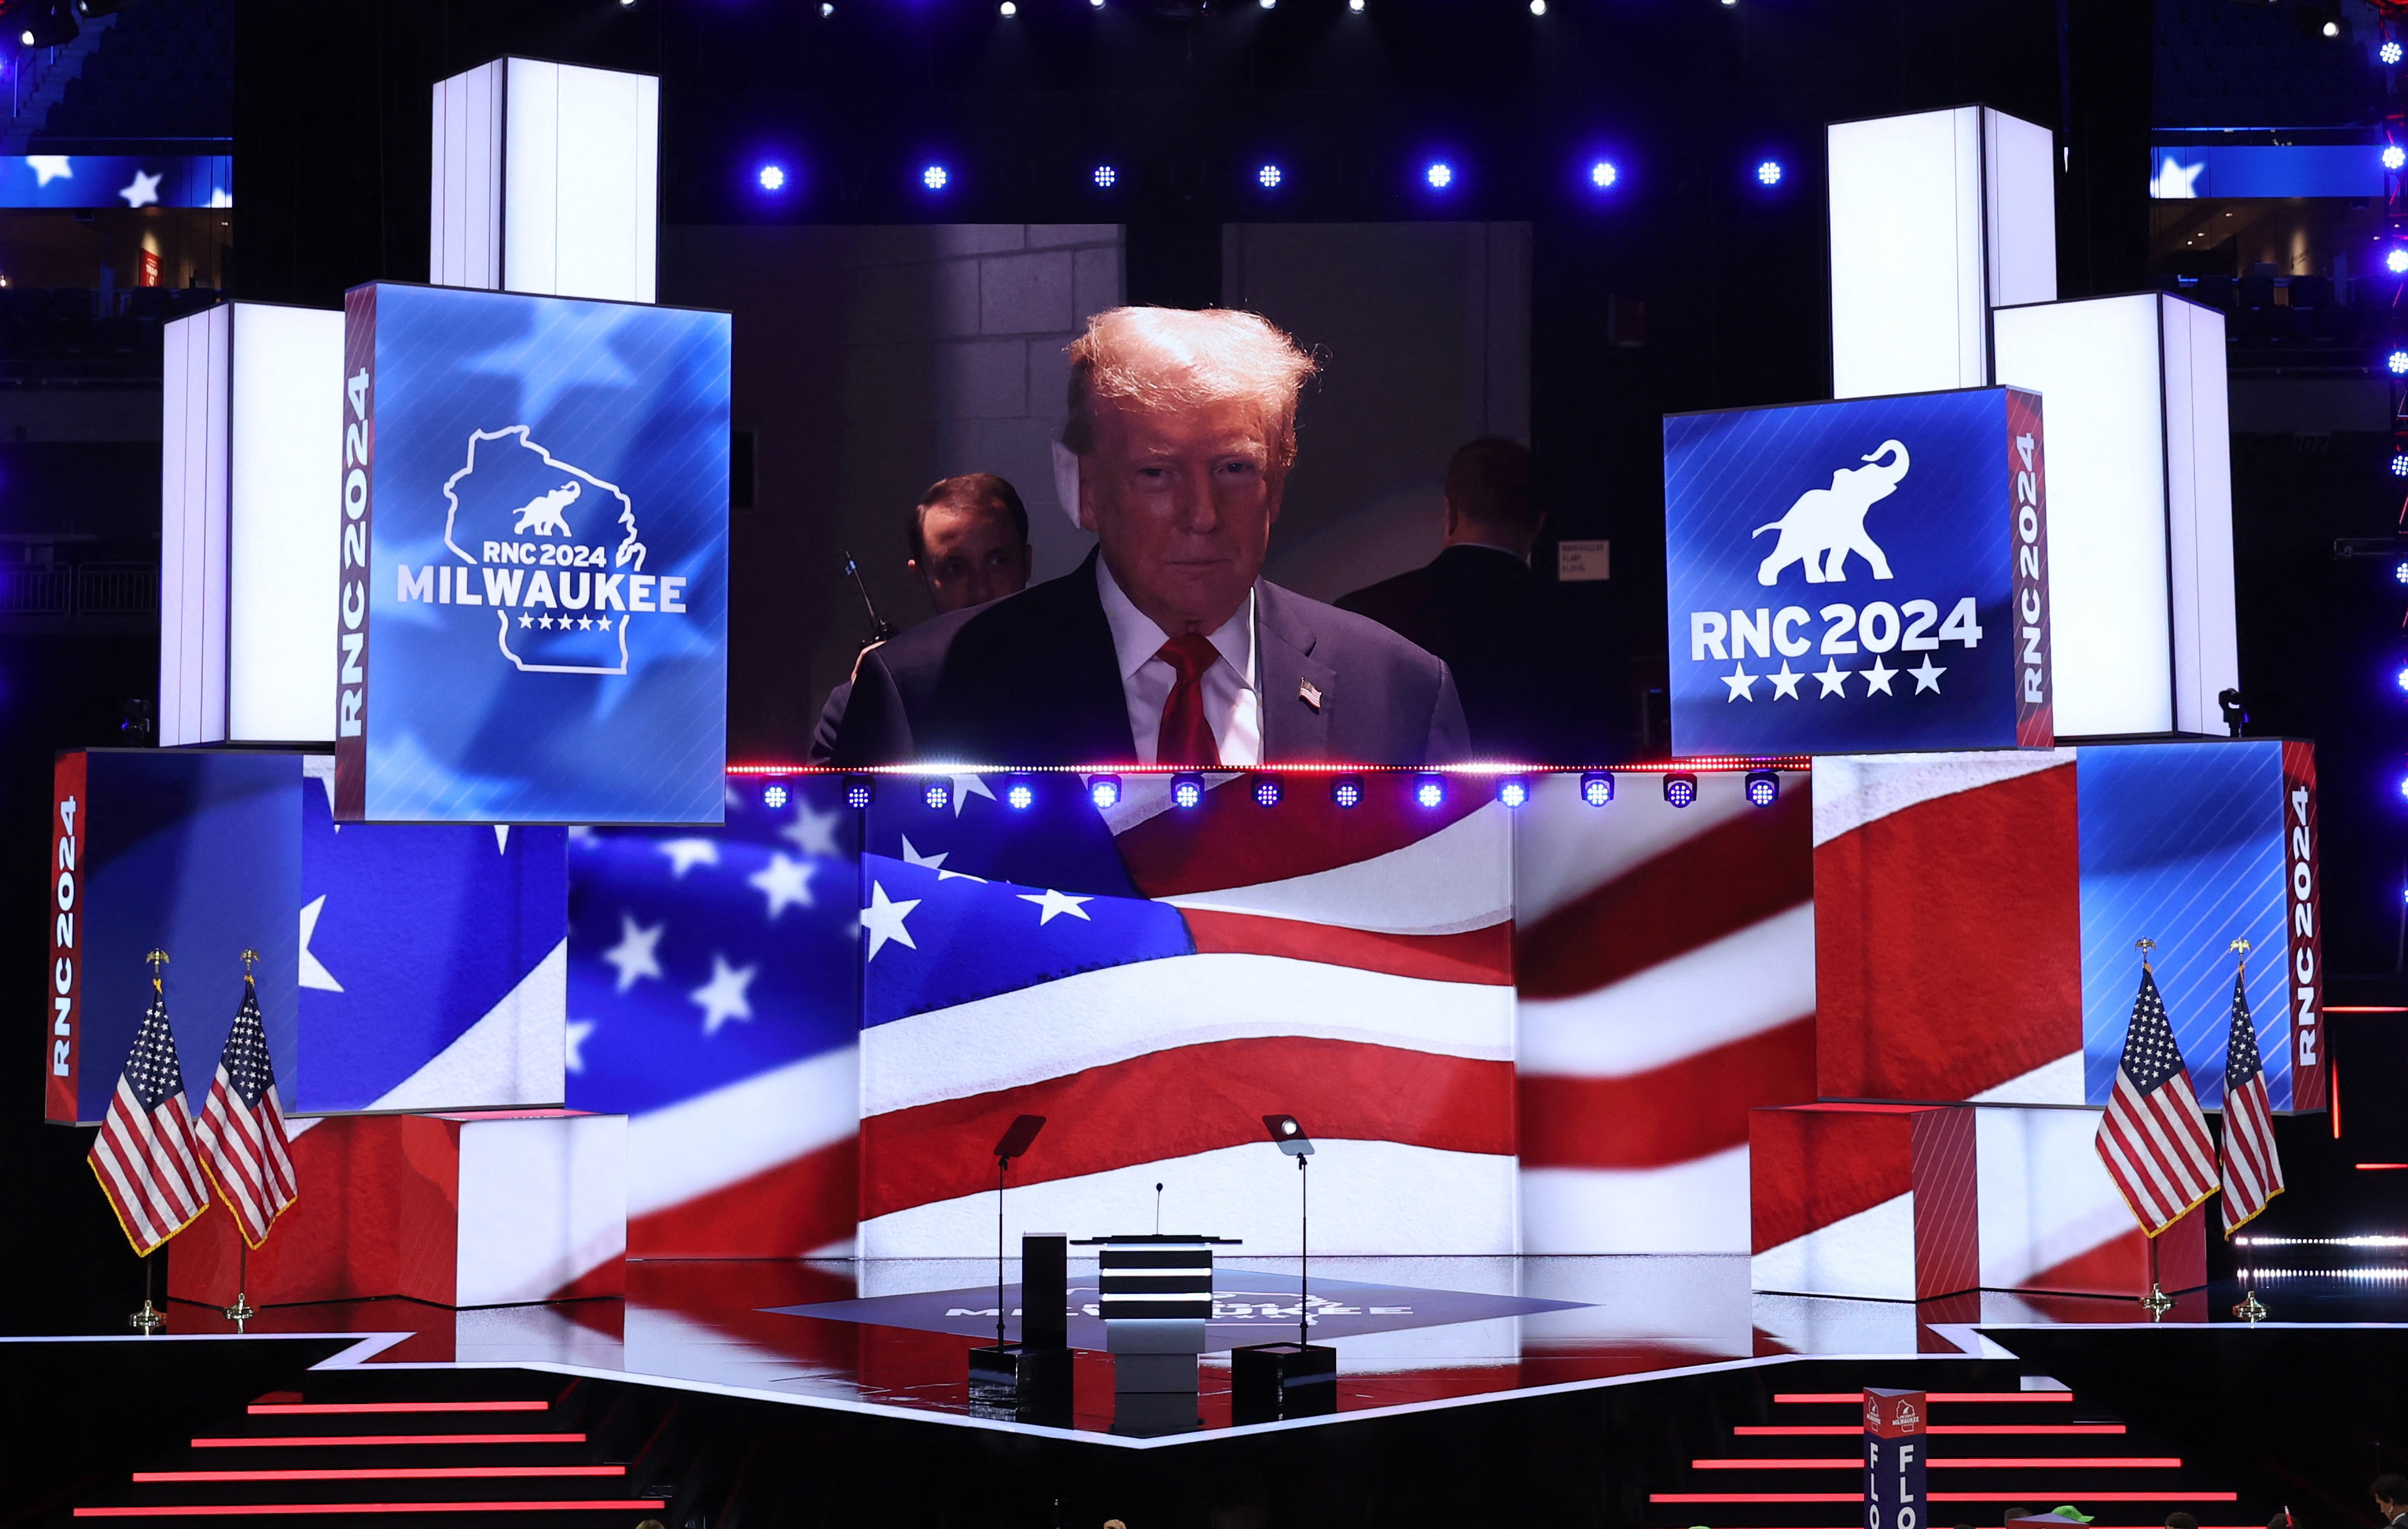 El expresidente y actual candidato presidencial republicano Donald Trump aparece en una pantalla grande durante el primer día de la Convención Nacional Republicana